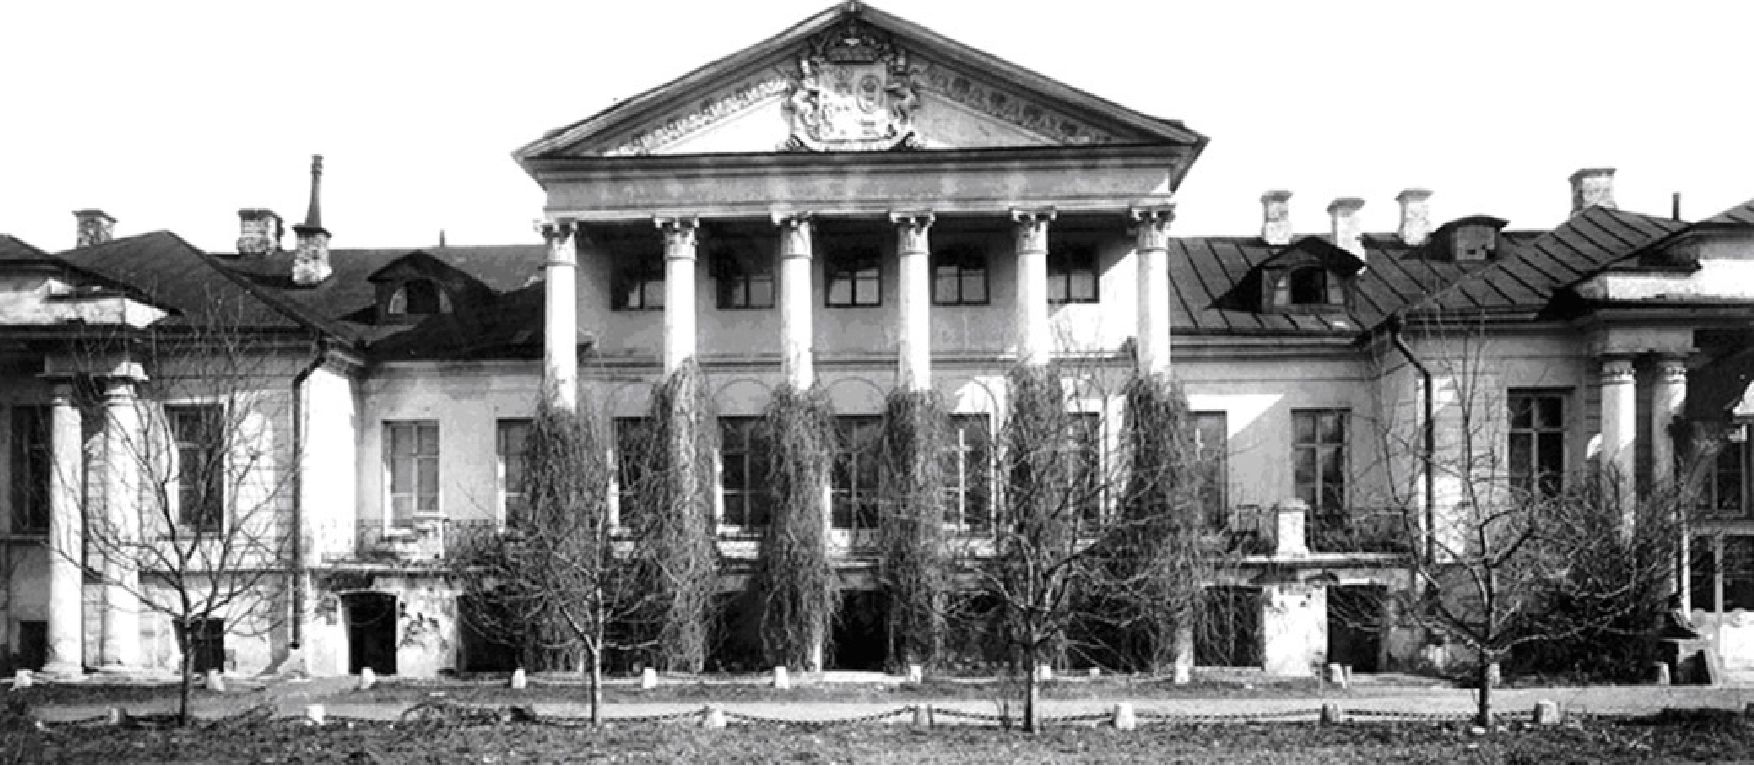 1915 г. Главный дом усадьбы Боде-Колычёвых на Поварской улице. Здесь в 1940 году проходило прощание с Михаилом Булгаковым